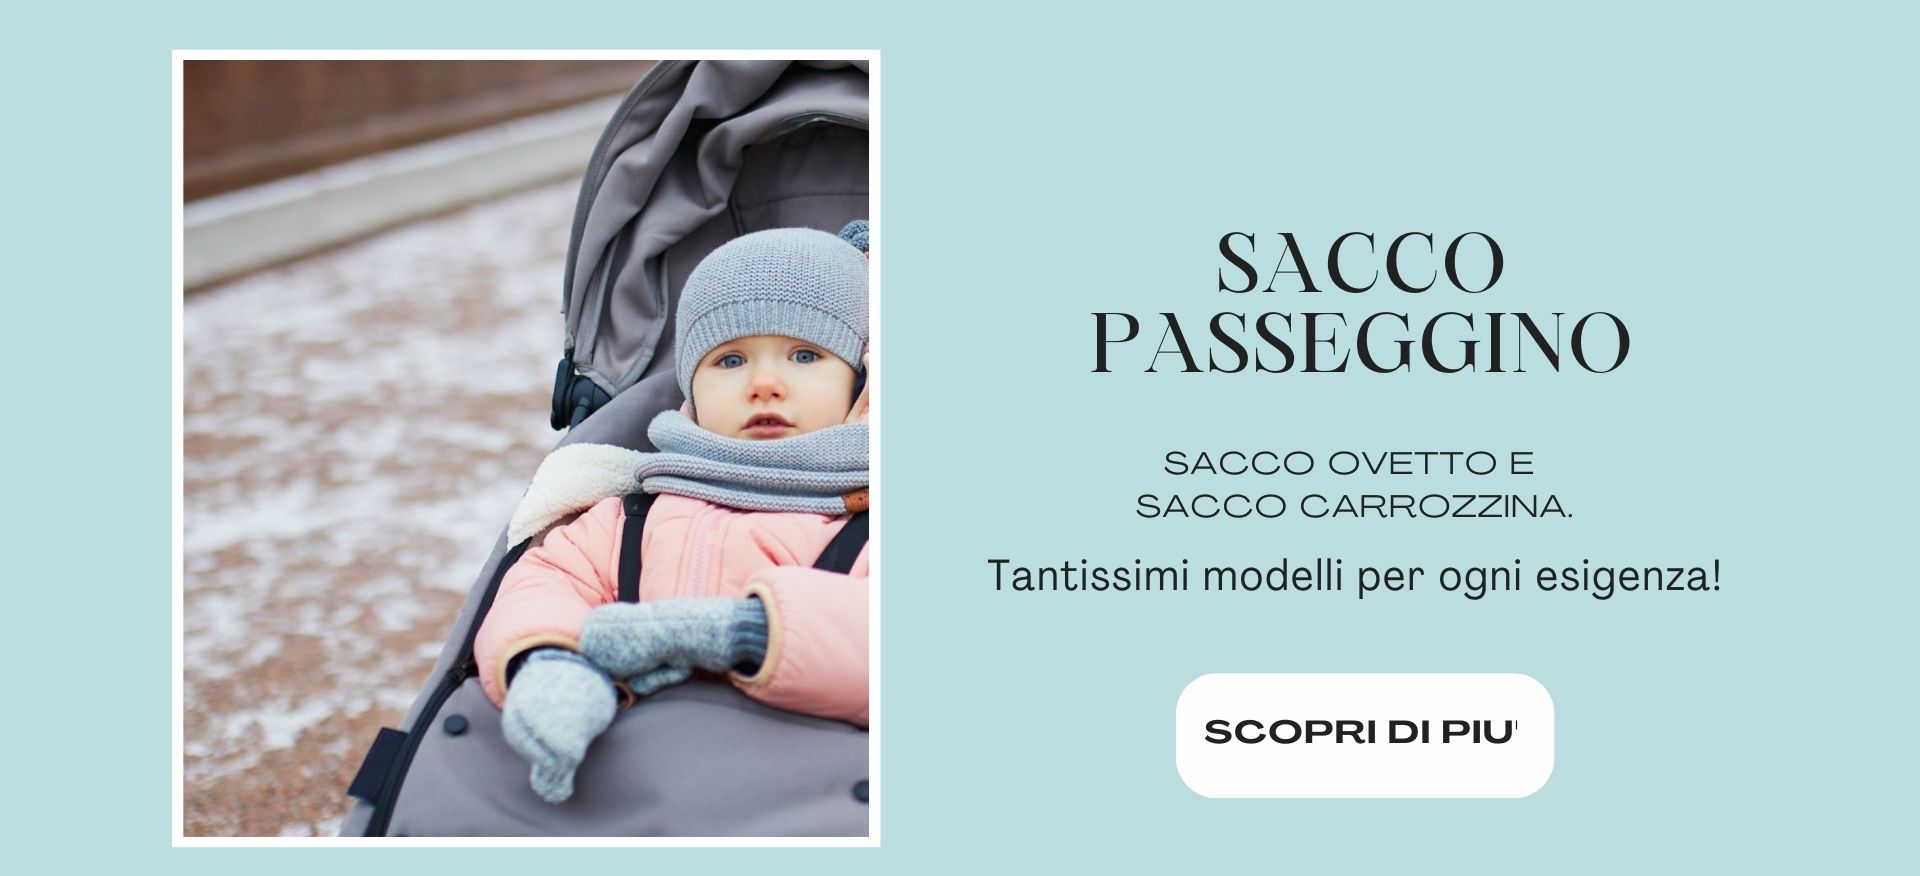 Banner Sacco Passeggino 1926x876 azz